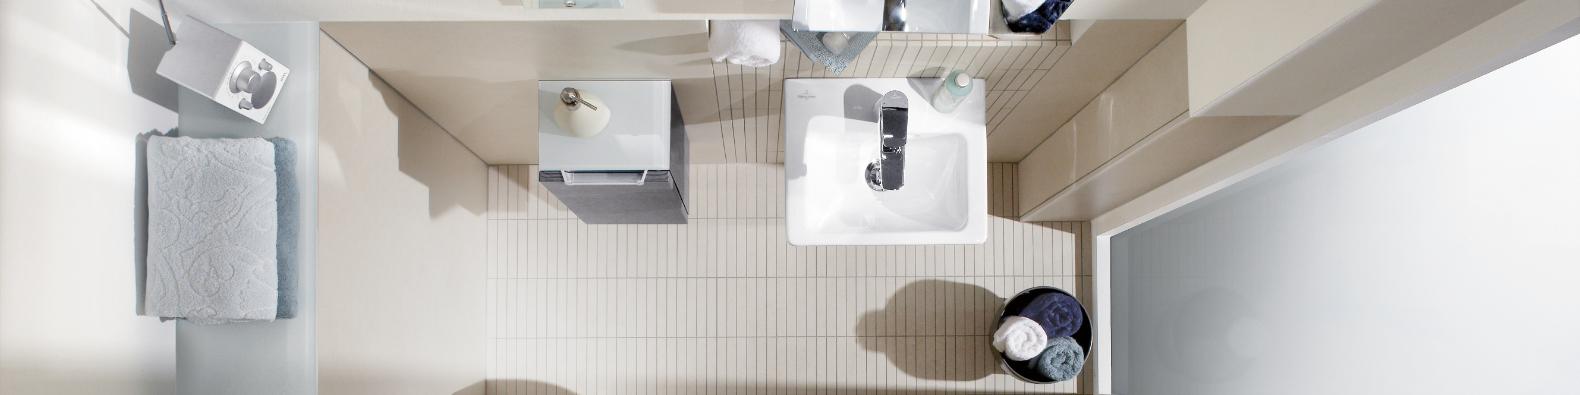 Projekt łazienki – jakie informacje przekazać projektantowi